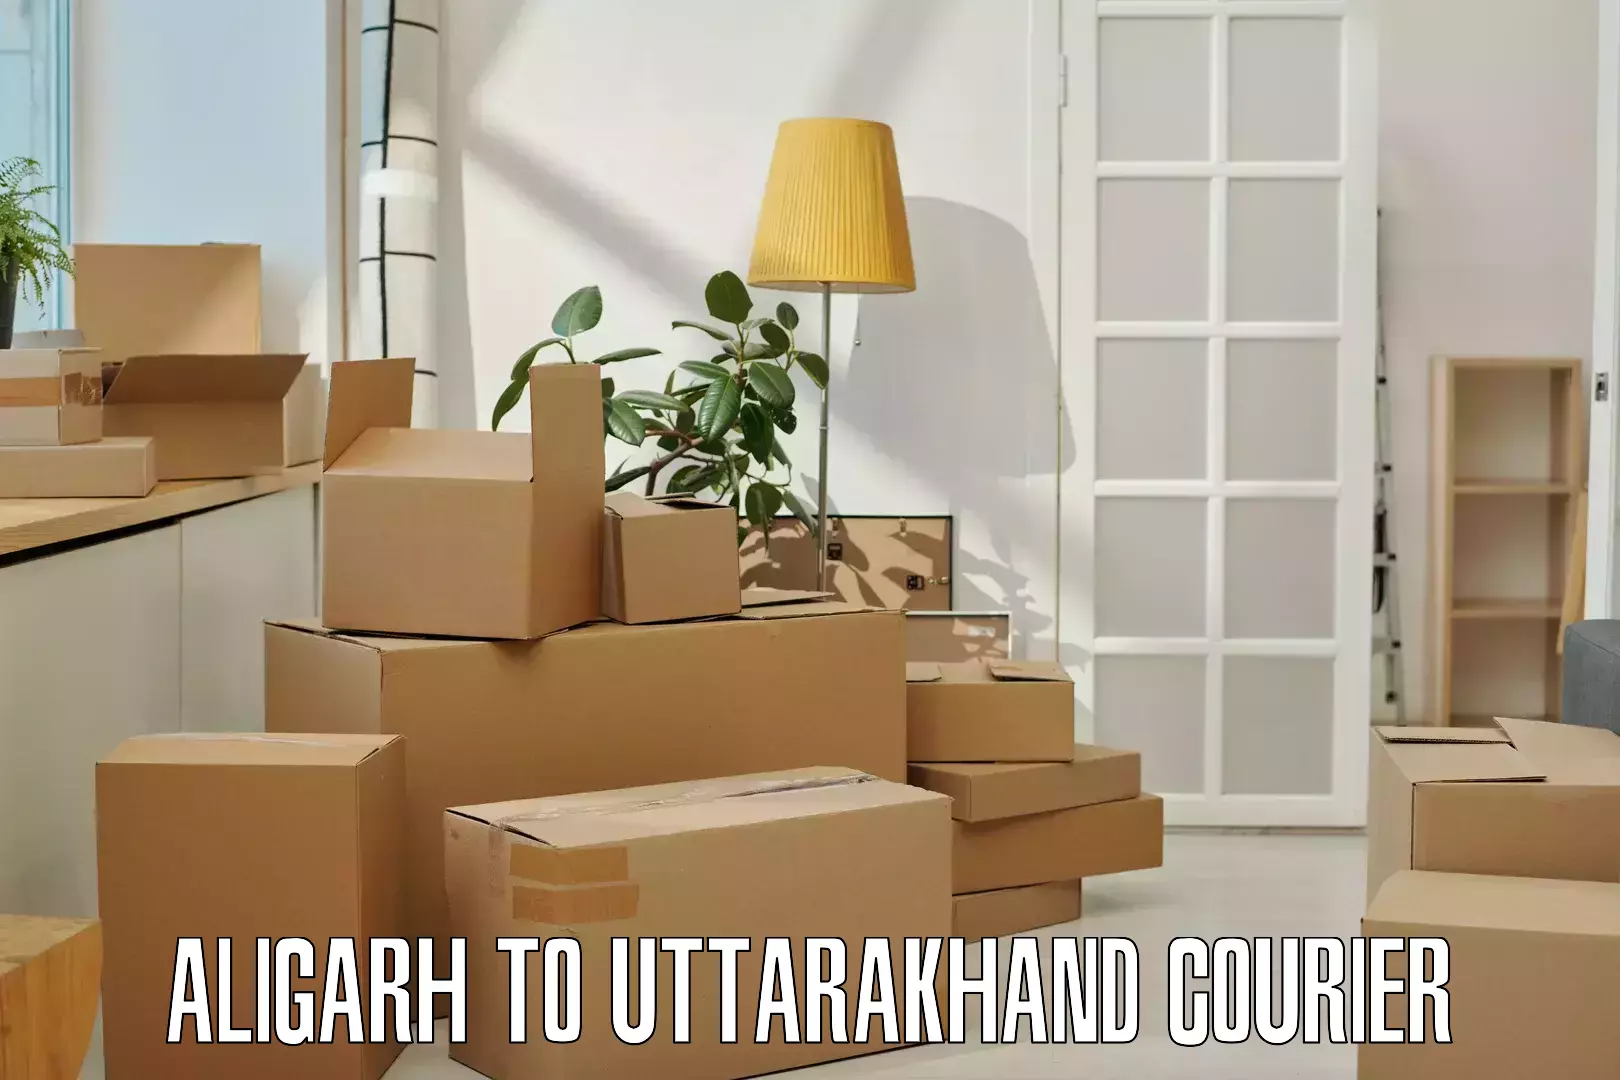 Pharmaceutical courier Aligarh to Uttarakhand